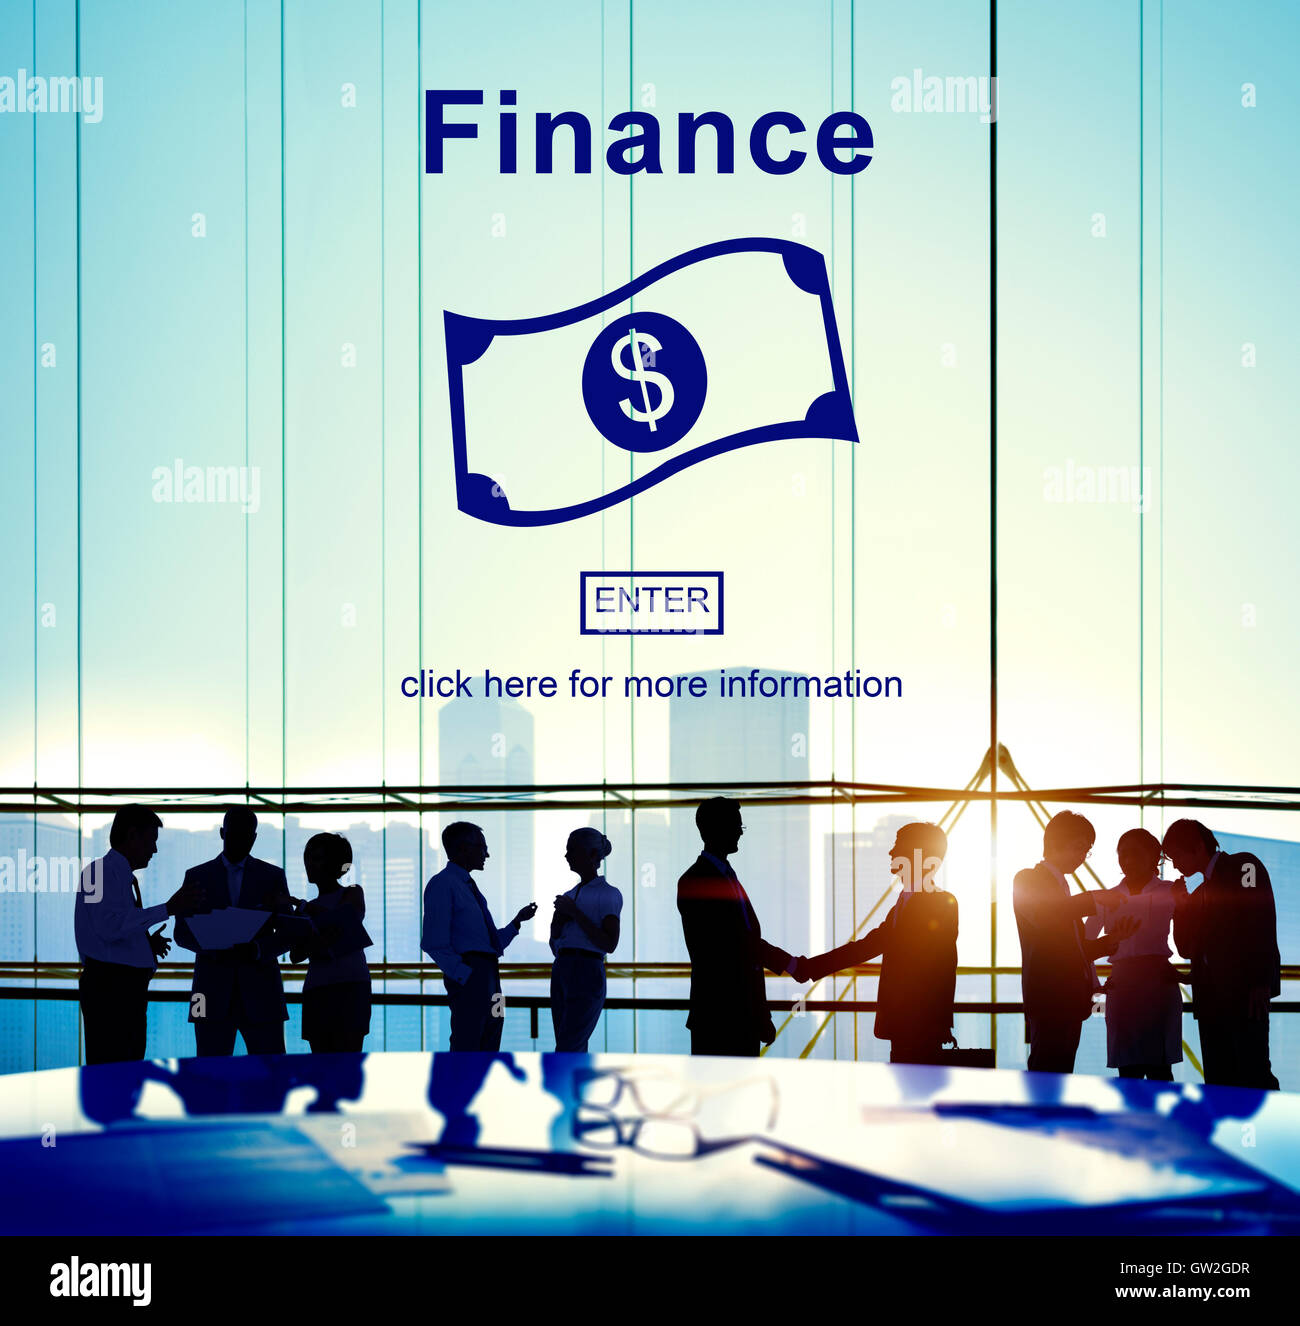 Cash Flow Business Money Financial Concept Stock Photo